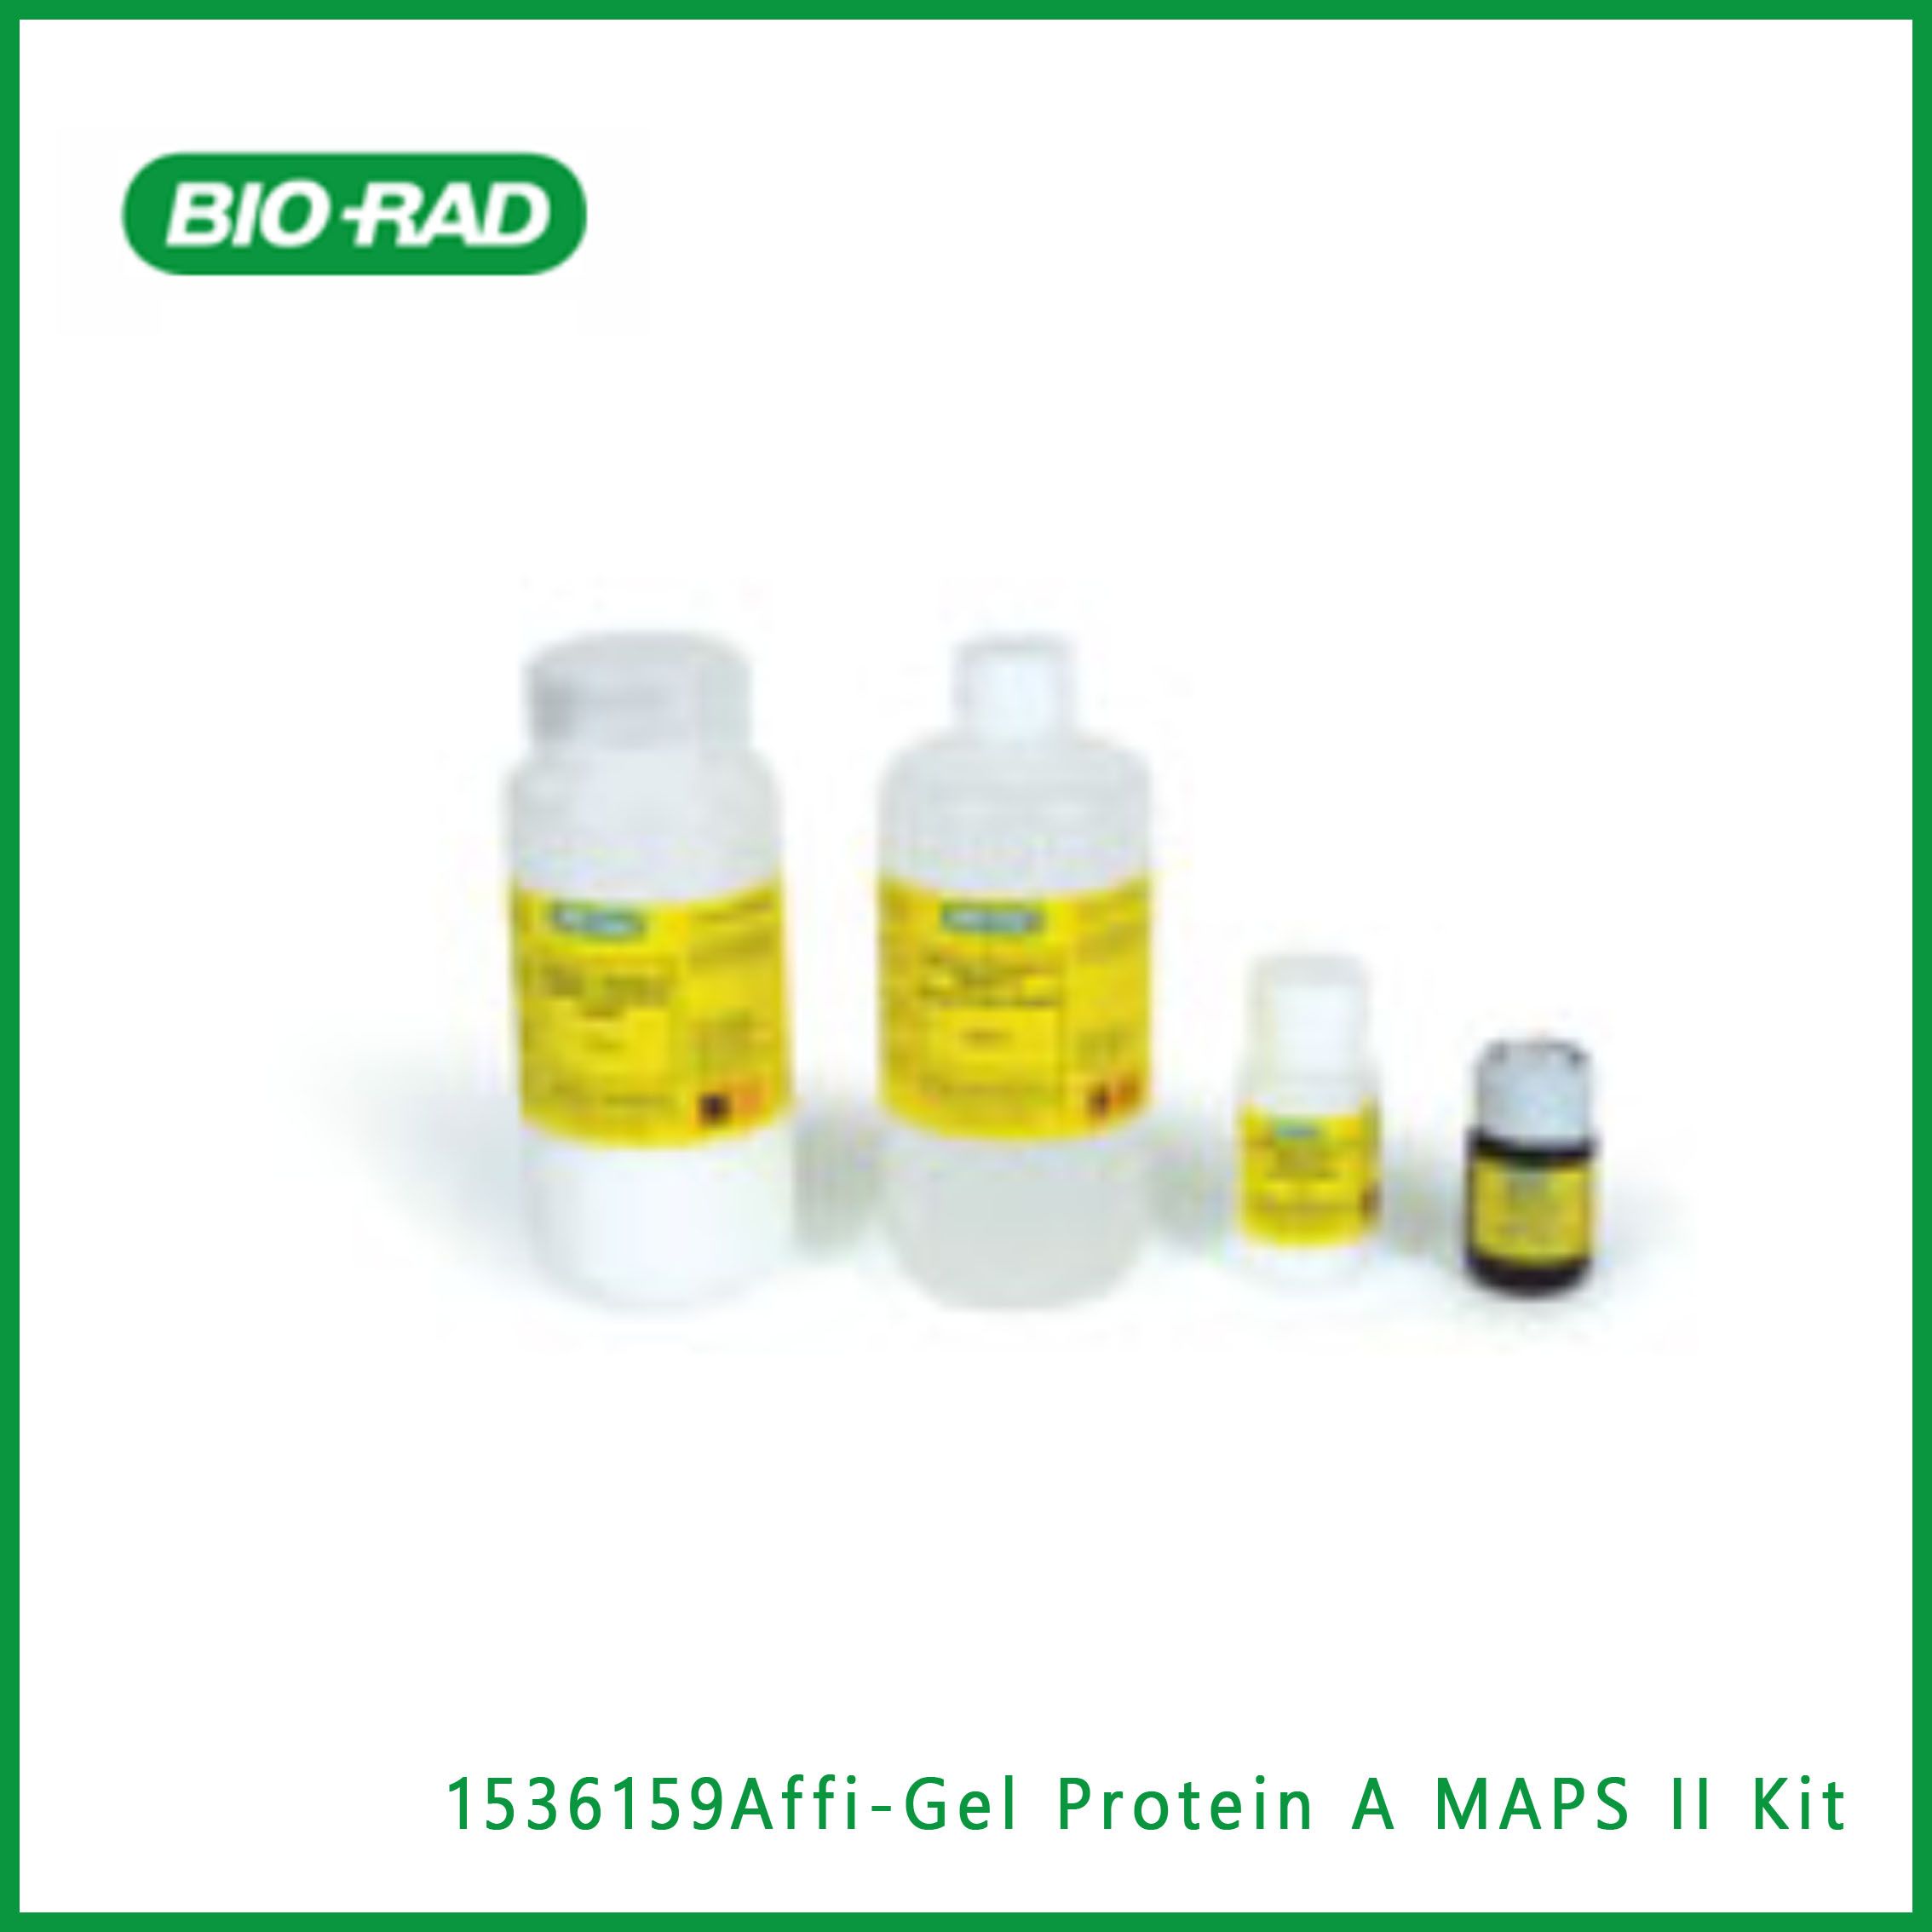 伯乐Bio-Rad1536159Affi-Gel Protein A MAPS II Kit，阿菲凝胶蛋白A MAPS II试剂盒，现货